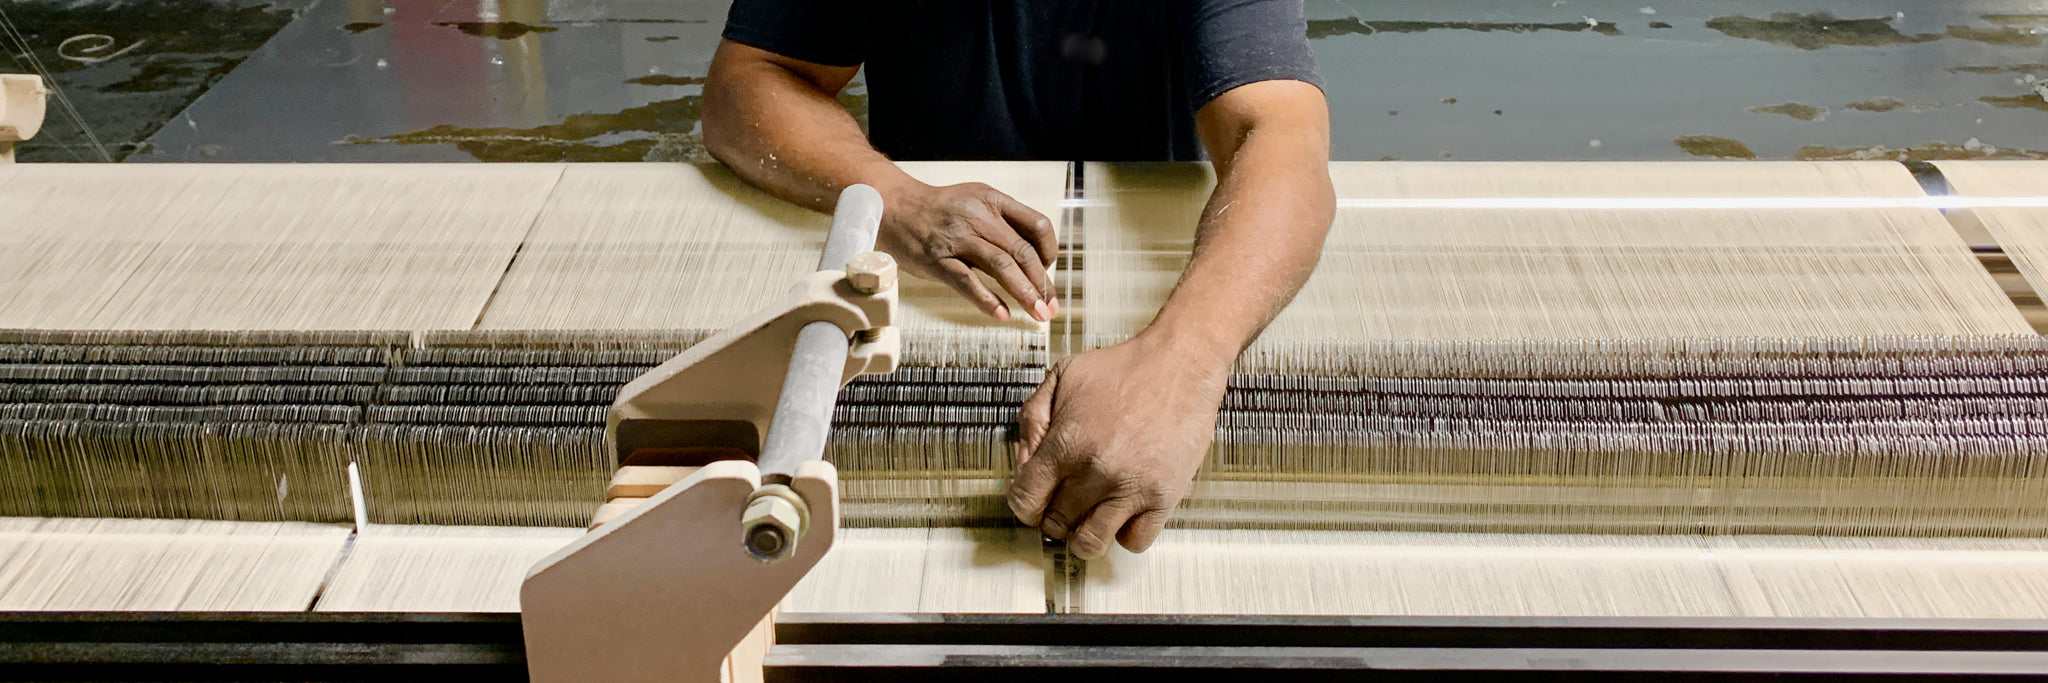 weaving american sheeting fabric